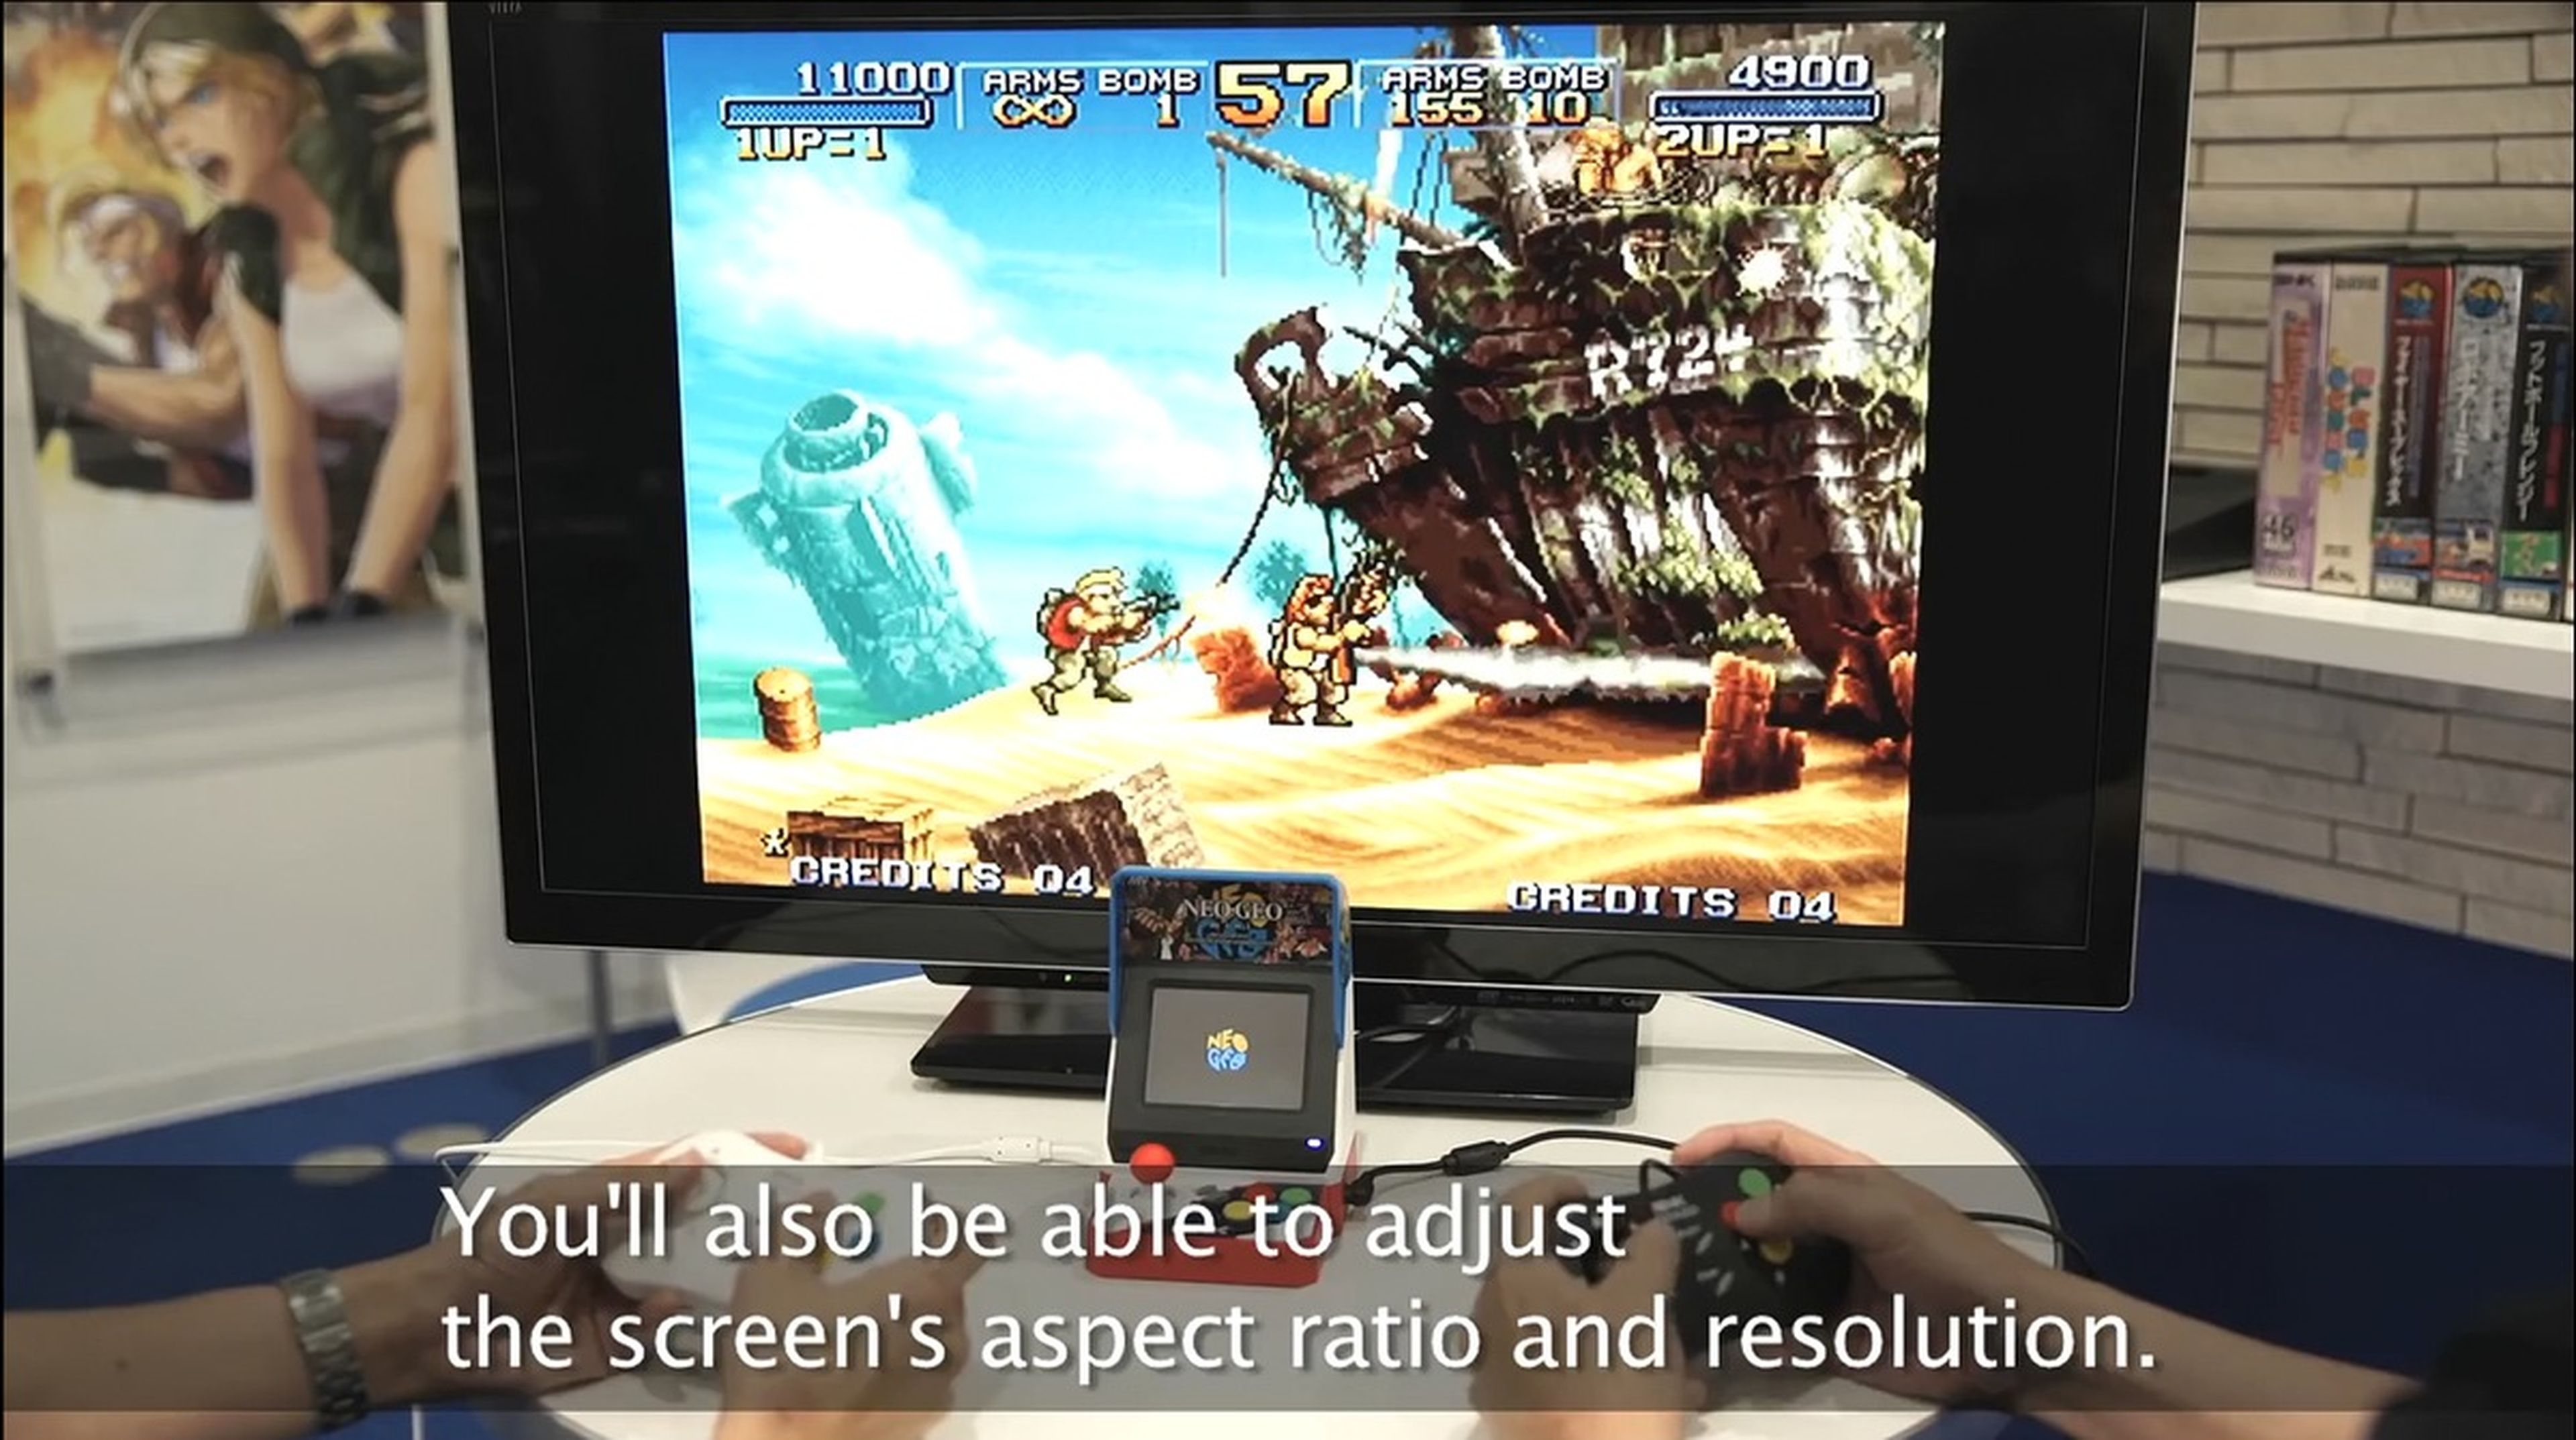 Primer vídeo de Neo Geo Mini en funcionamiento, así luce su mini pantalla